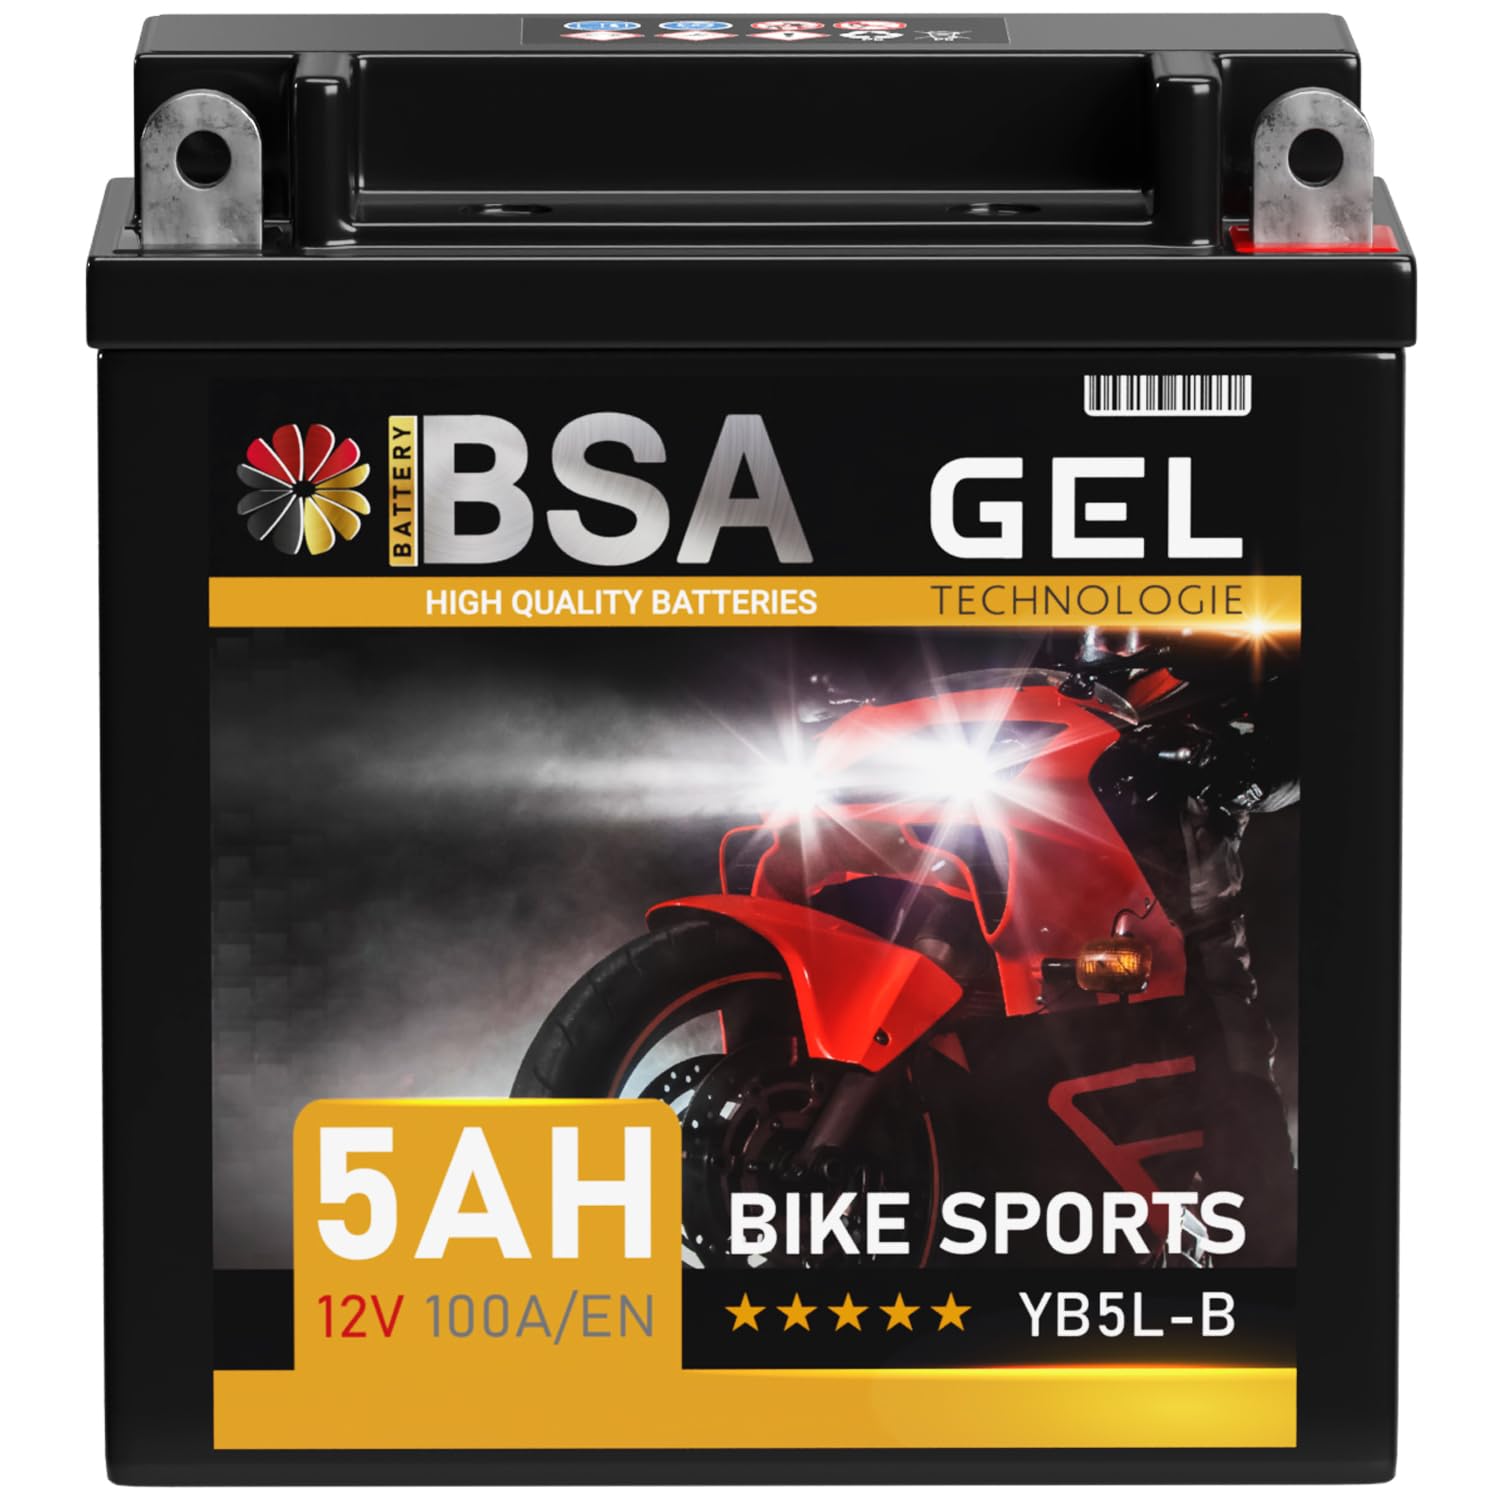 BSA YB5L-B GEL Roller Batterie 12V 5Ah 100A/EN Motorradbatterie doppelte Lebensdauer entspricht 50512 CB5L-B 12N5.5-3B vorgeladen auslaufsicher wartungsfrei ersetzt 4Ah von BSA BATTERY HIGH QUALITY BATTERIES